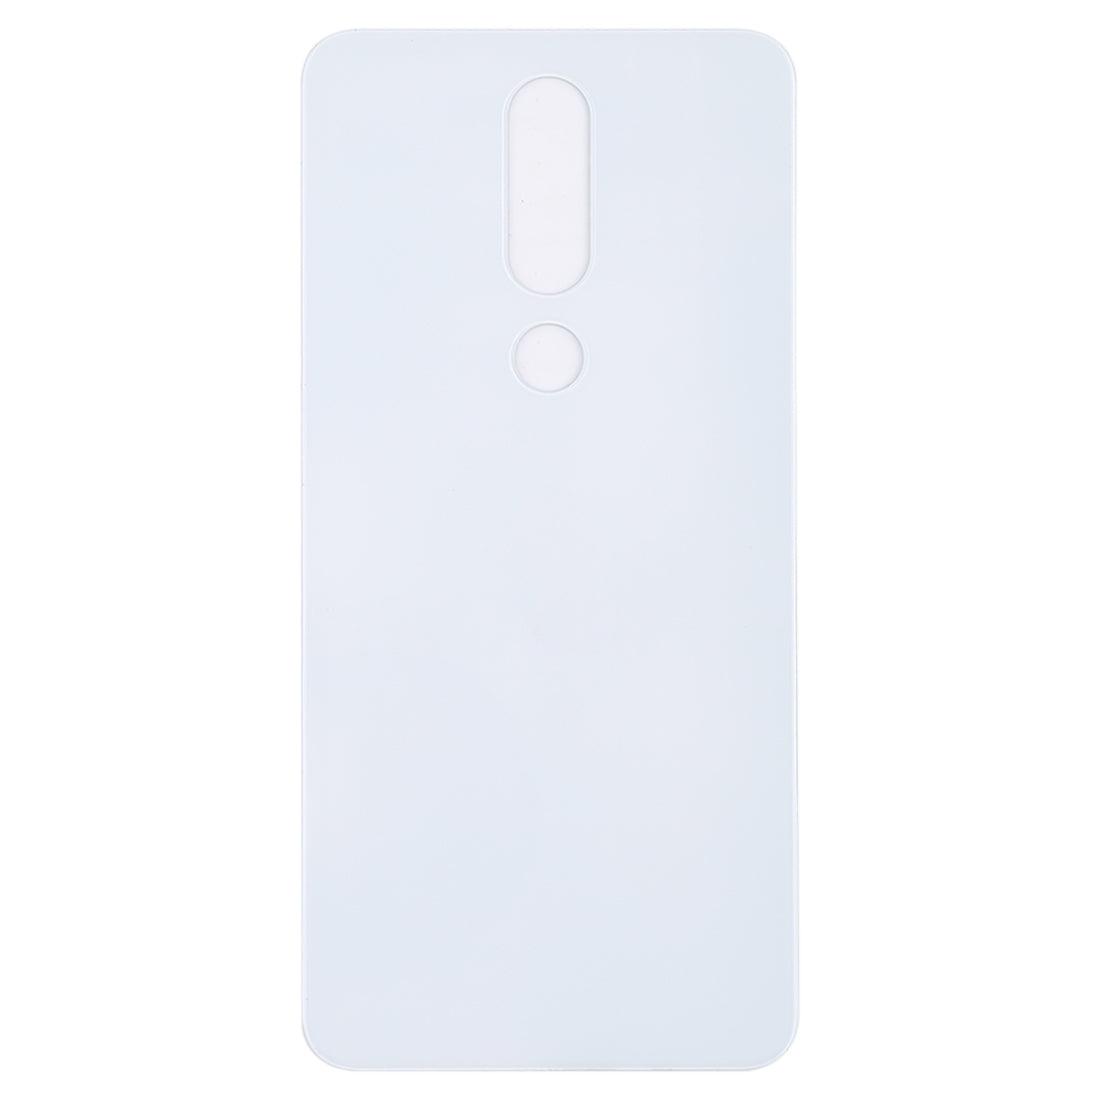 Back Glass Panel Housing Body for Nokia 6.1 Plus White